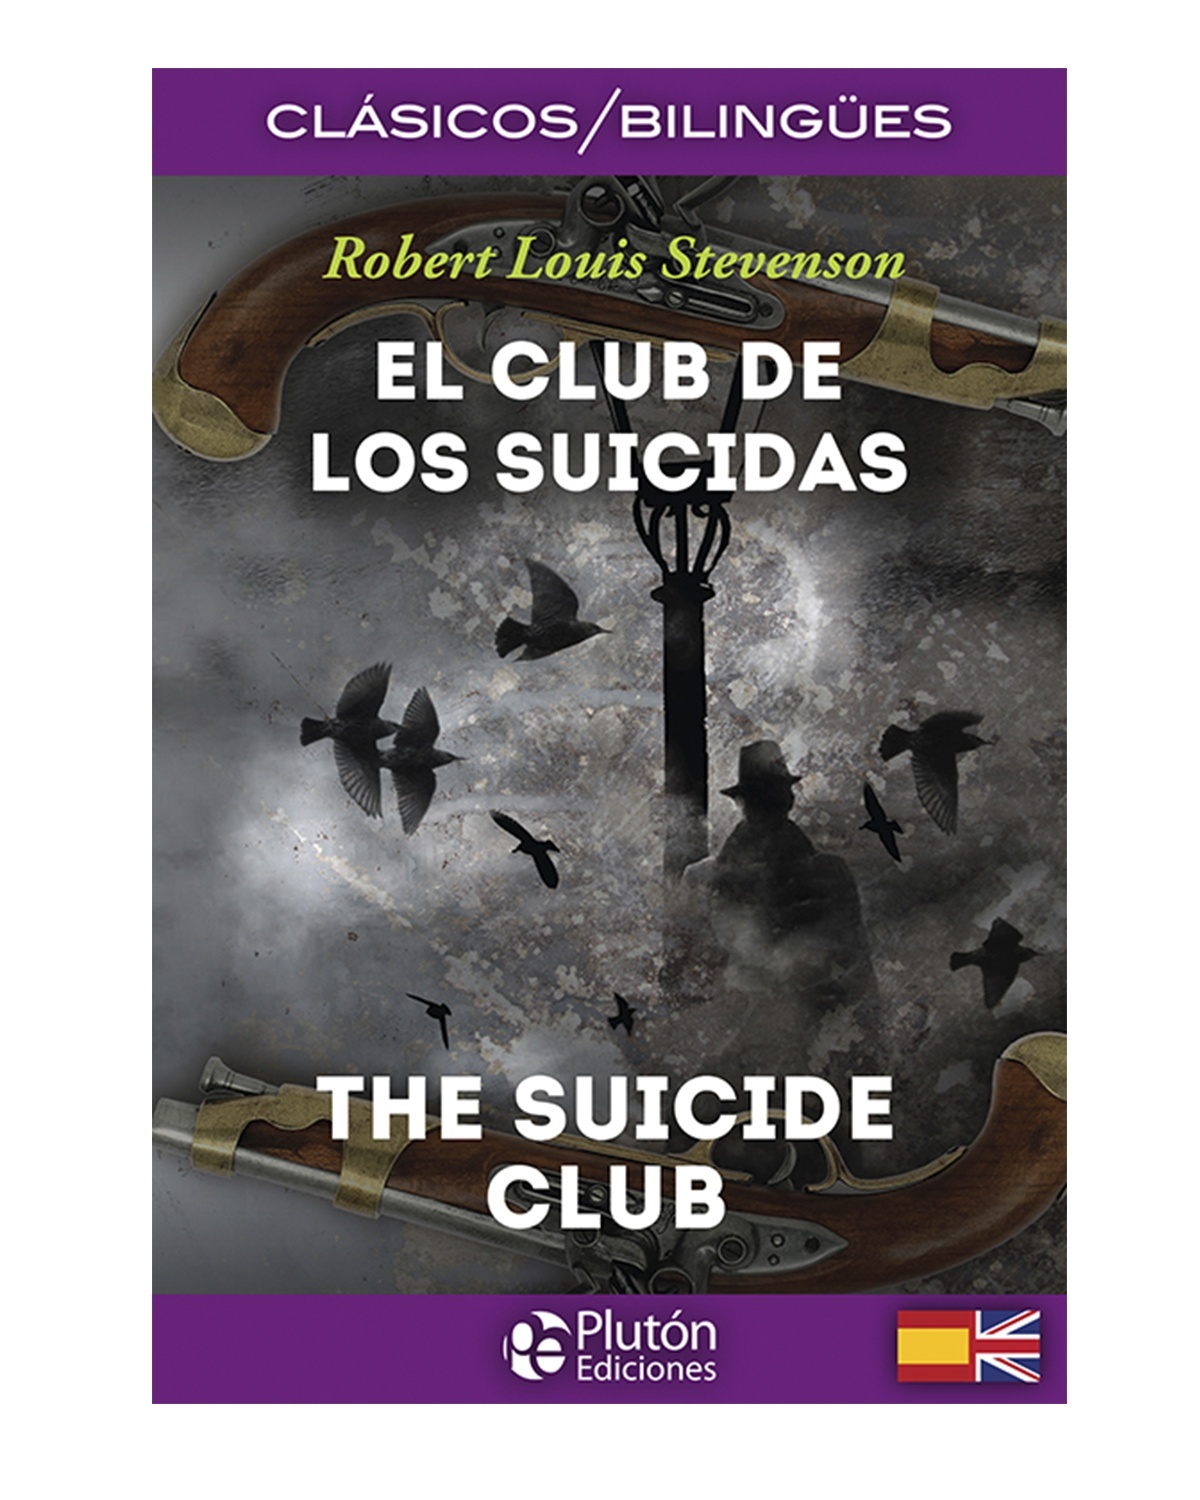 El Club de los Suicidas/The Suicide Club